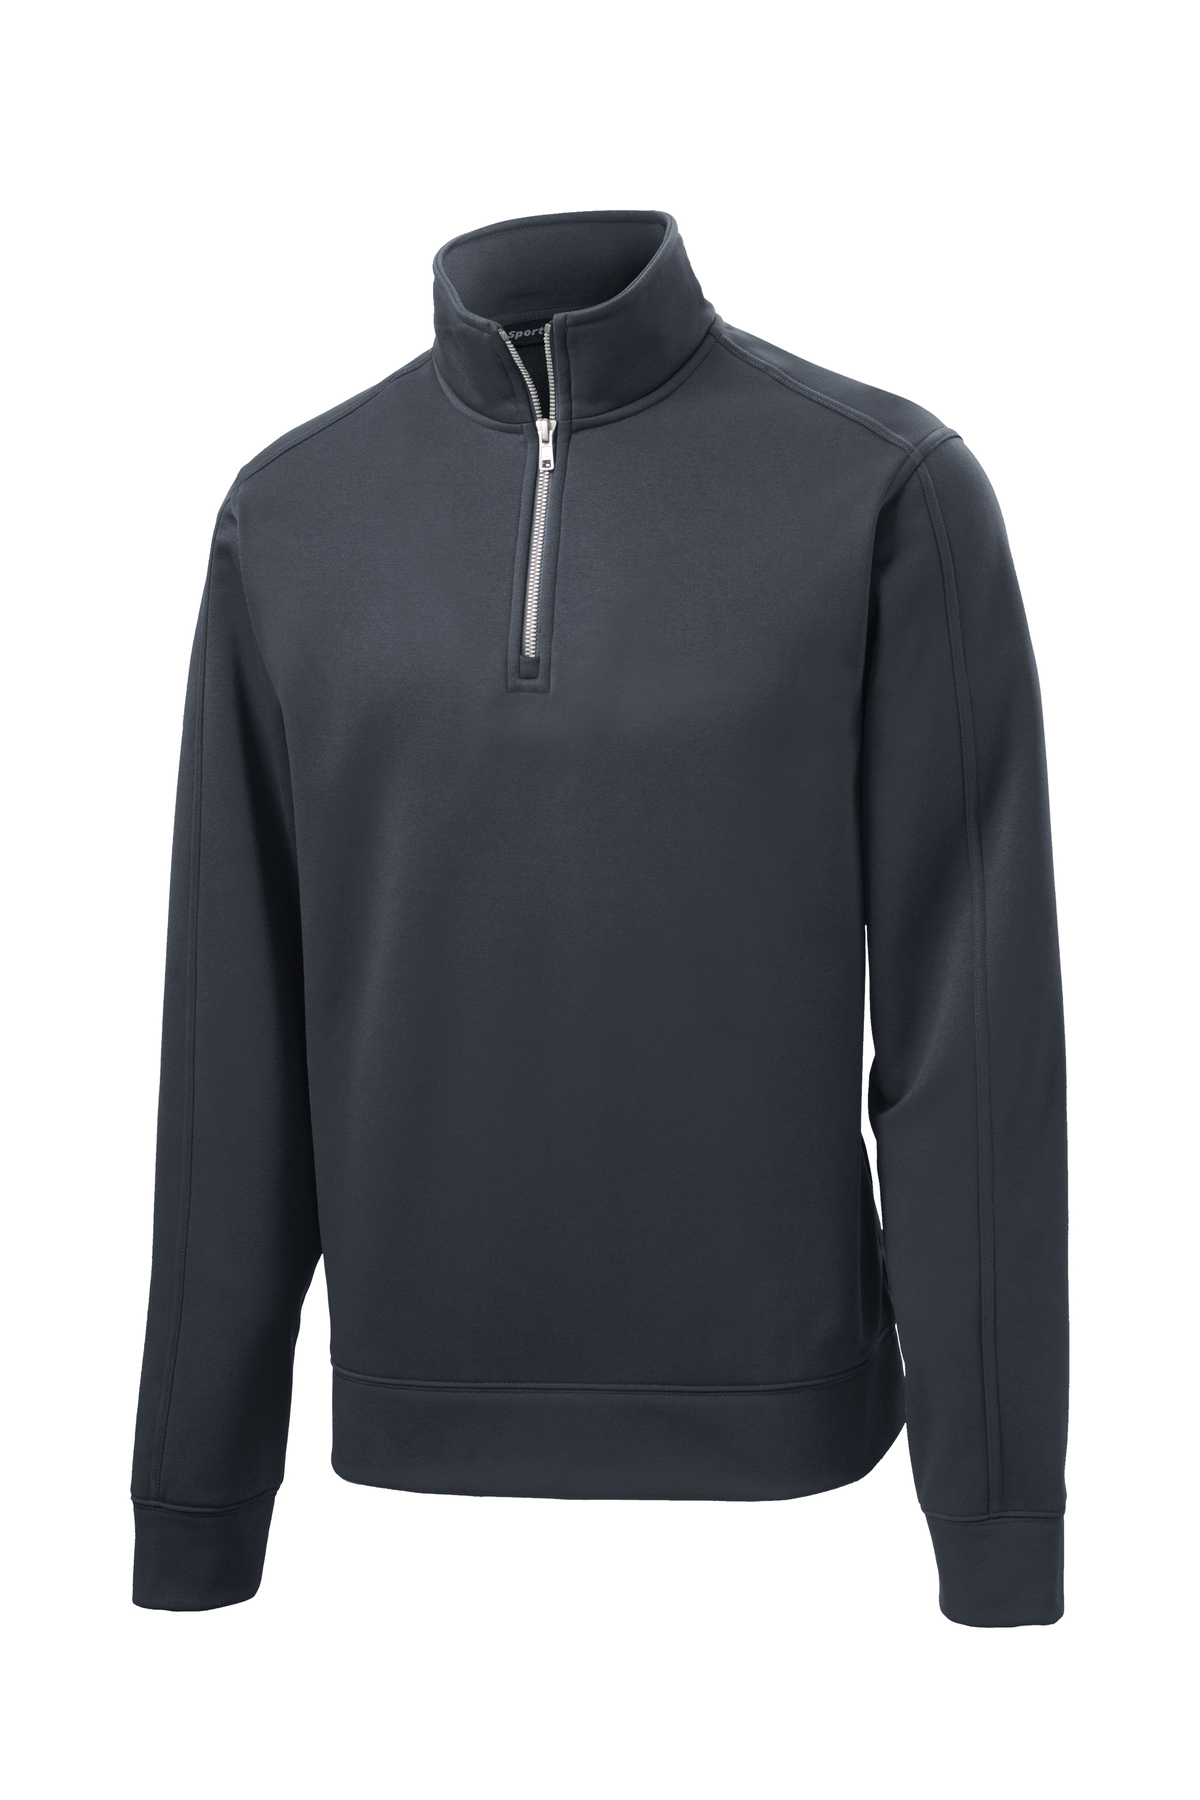 Sport-Tek Repel Fleece 1/4-Zip Pullover | Product | SanMar